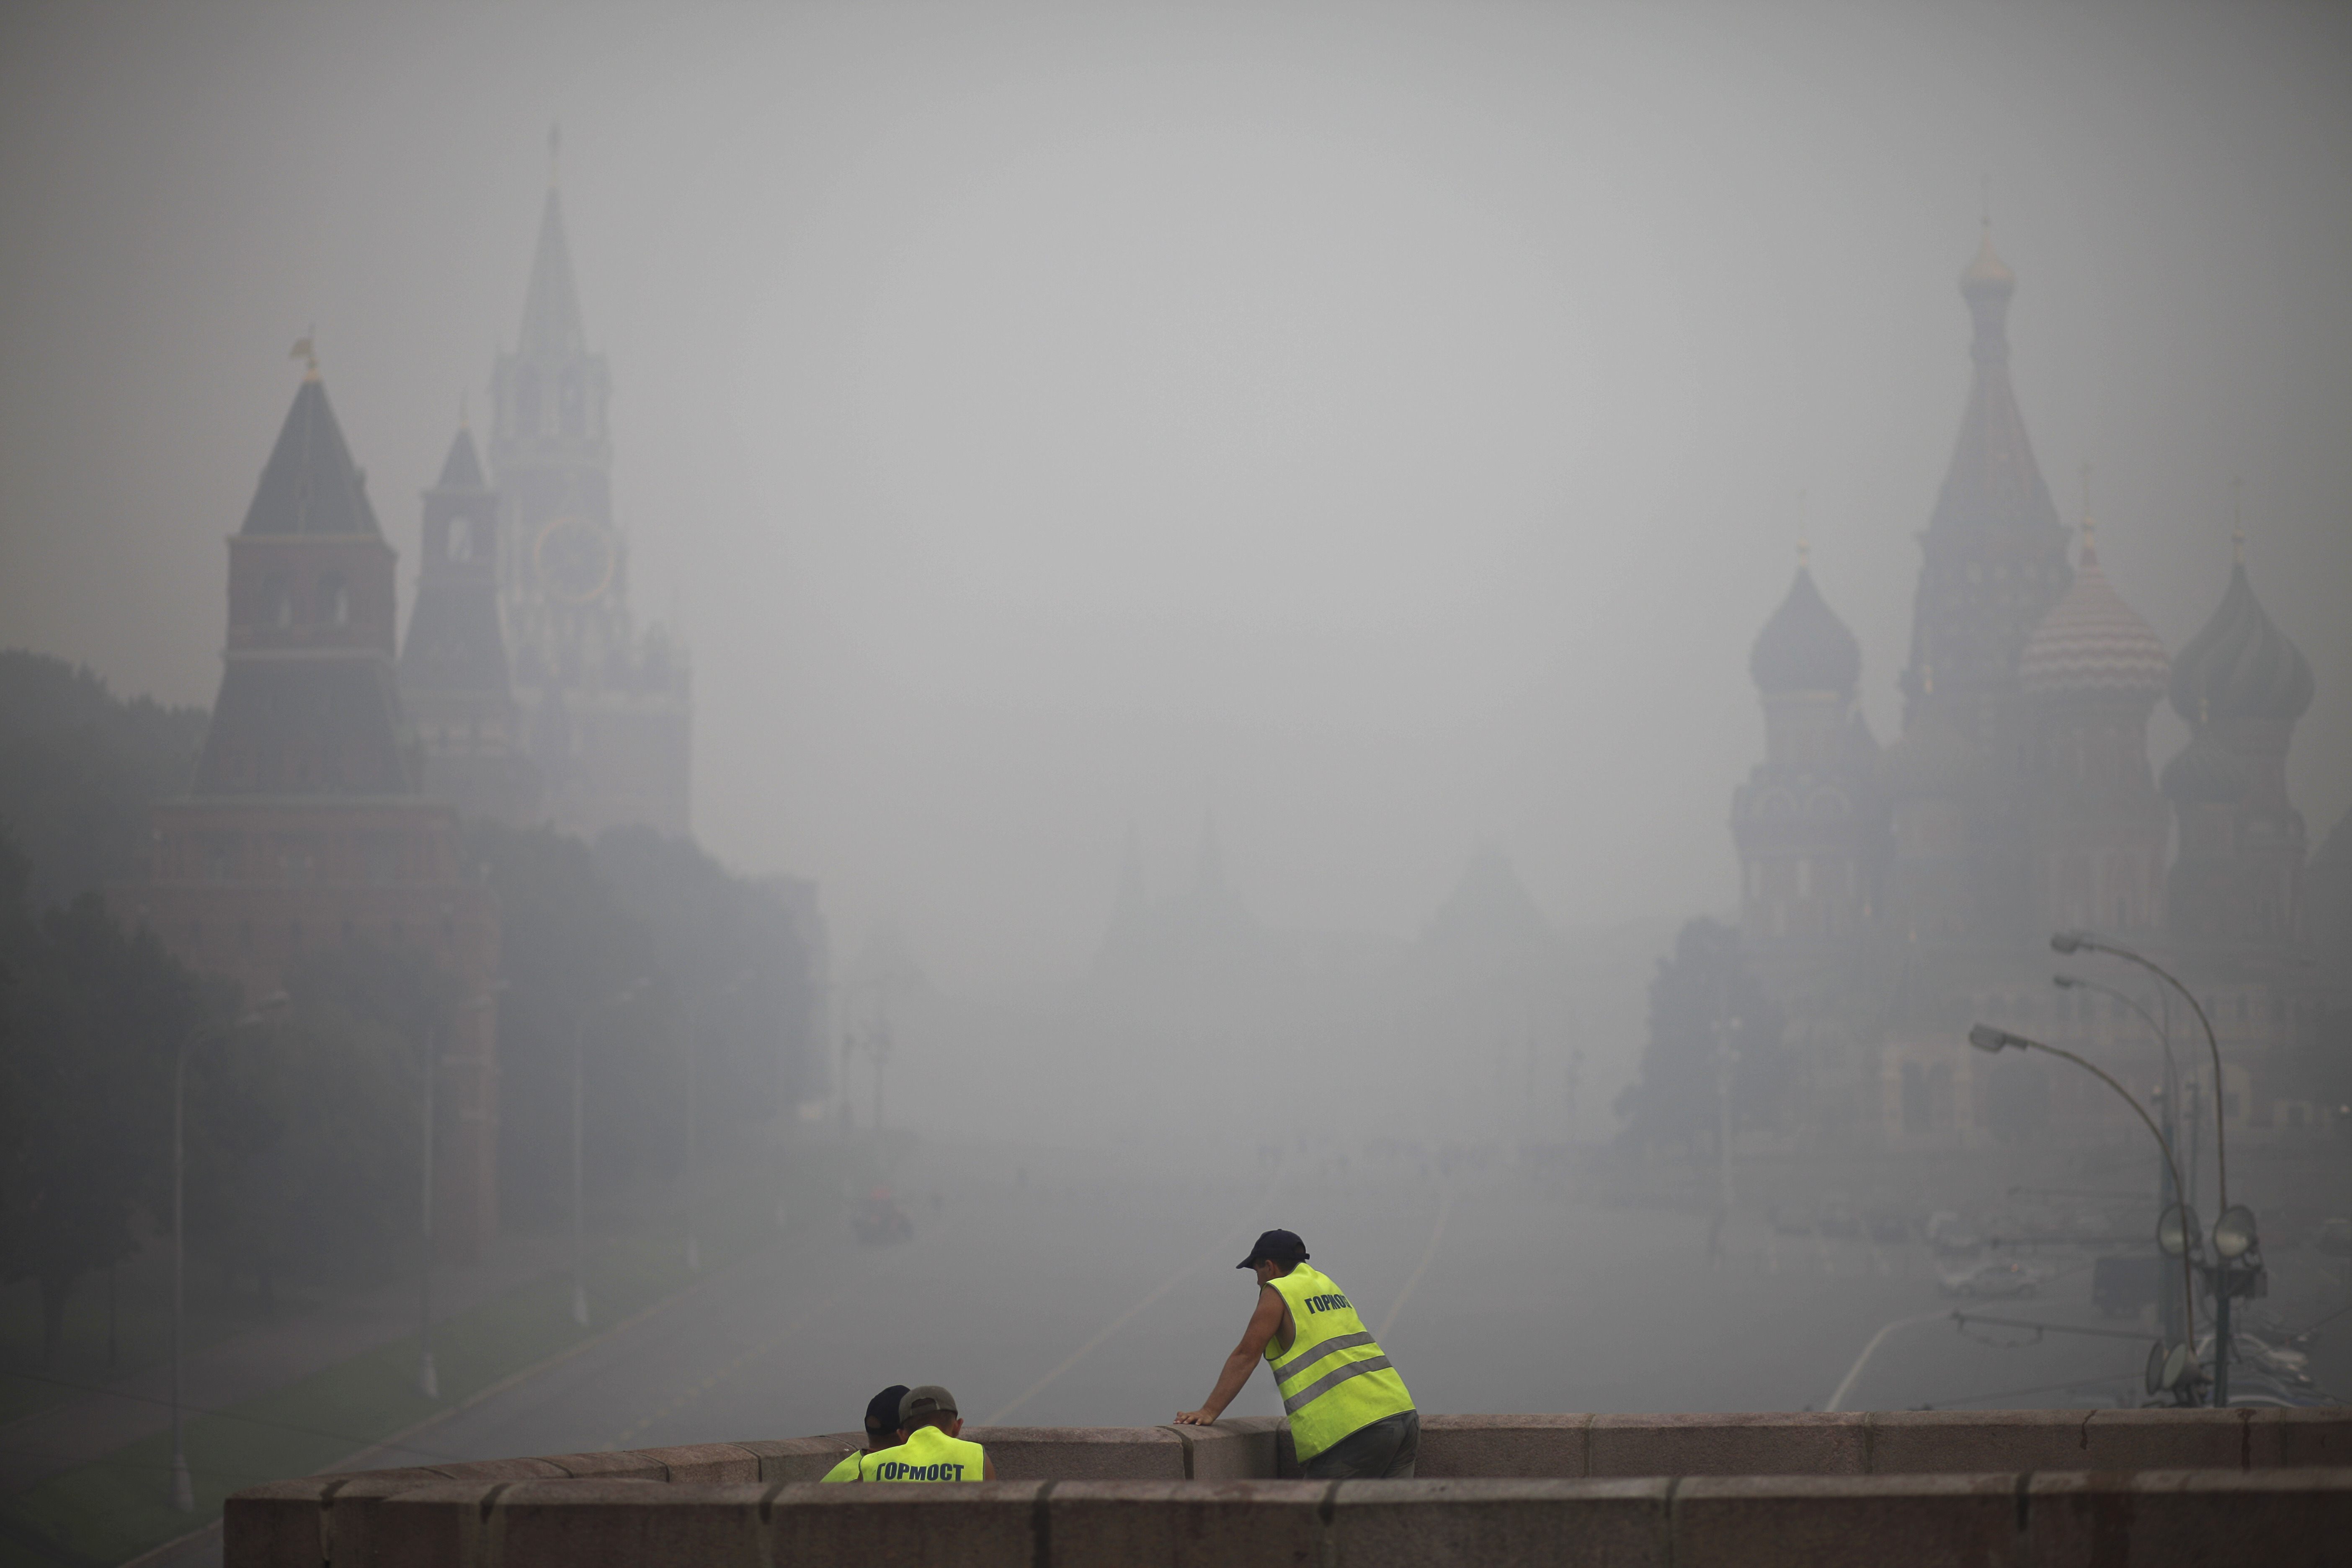 Röken som lagt sig över Moskva påminner om röken från en lägereld, fast tjockare och intensivare.